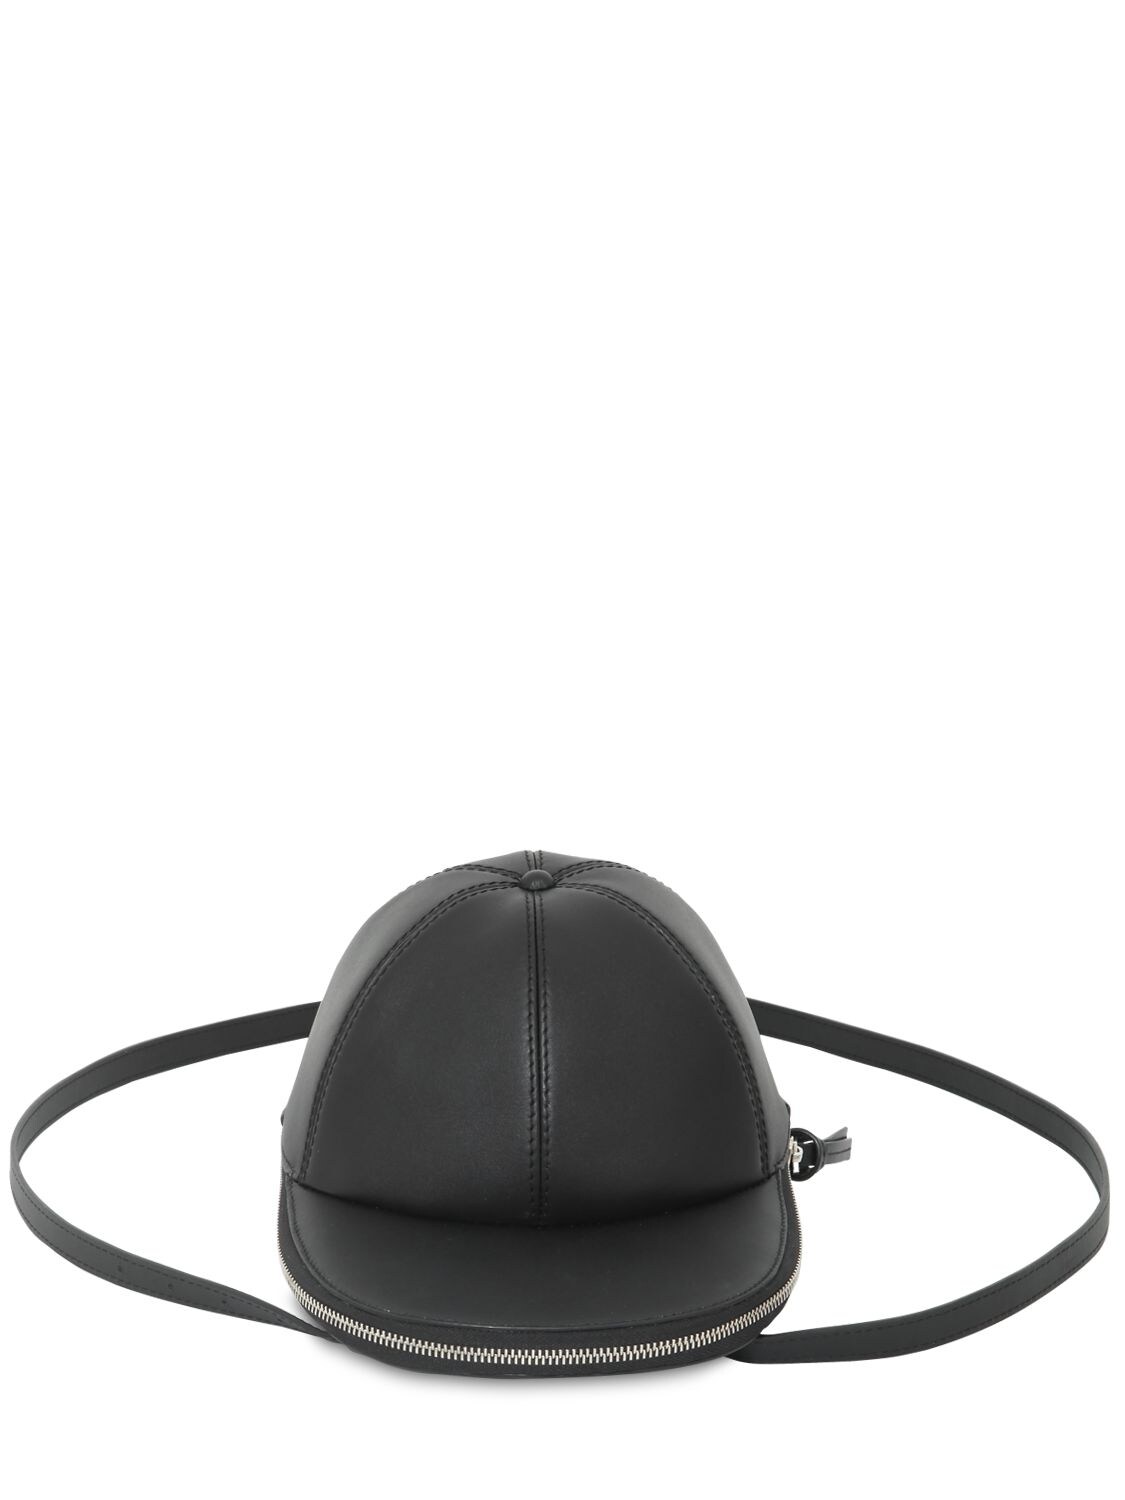 JW ANDERSON 鸭舌帽造型皮革斜挎包,71IWJQ002-OTK50